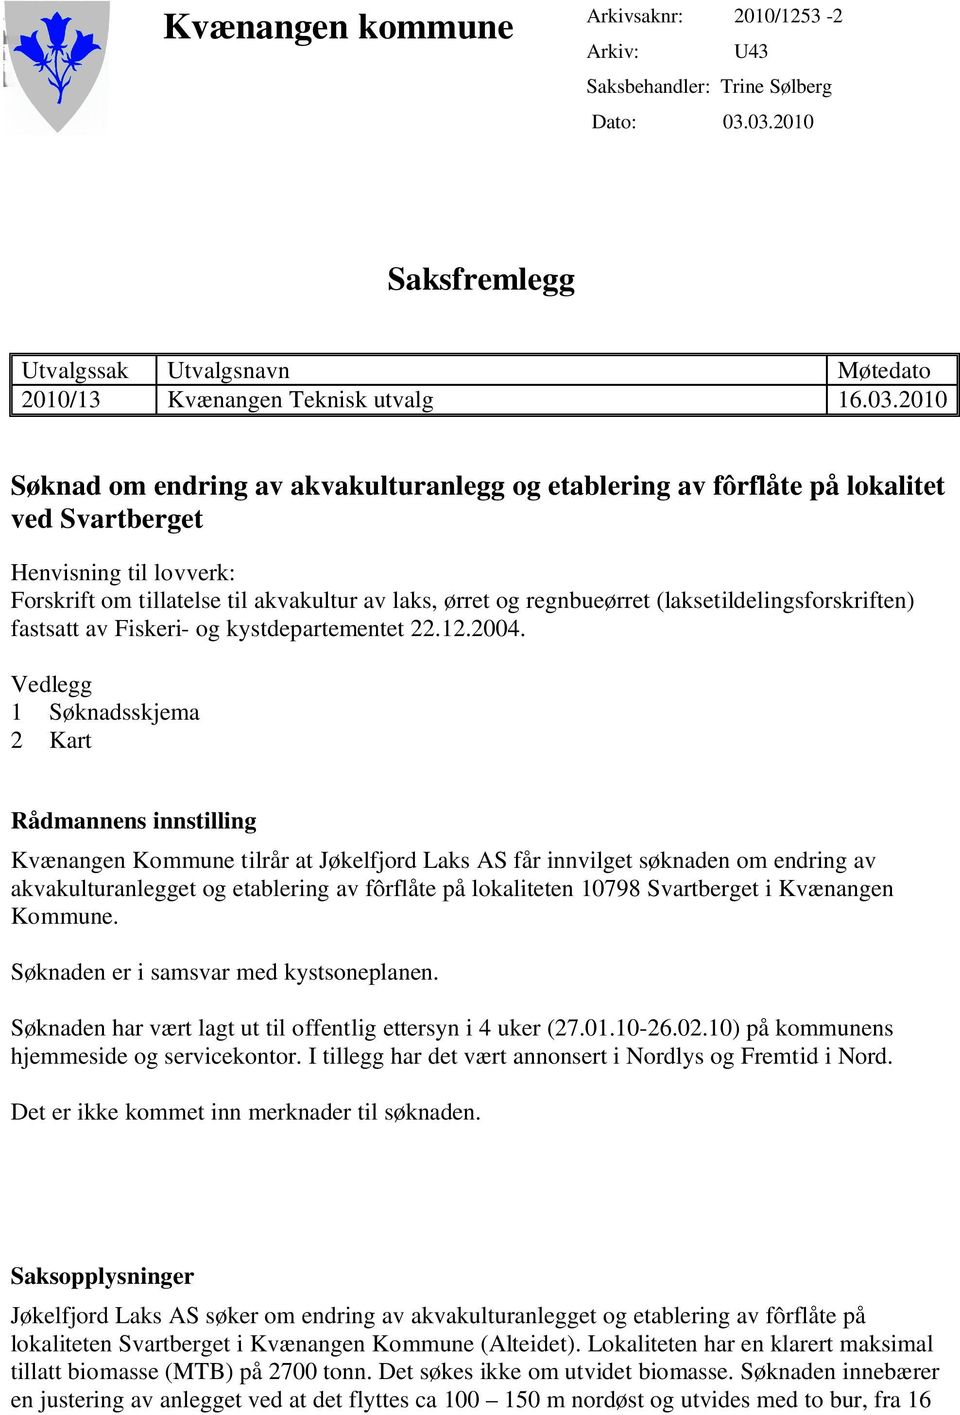 Henvisning til lovverk: Forskrift om tillatelse til akvakultur av laks, ørret og regnbueørret (laksetildelingsforskriften) fastsatt av Fiskeri- og kystdepartementet 22.12.2004.